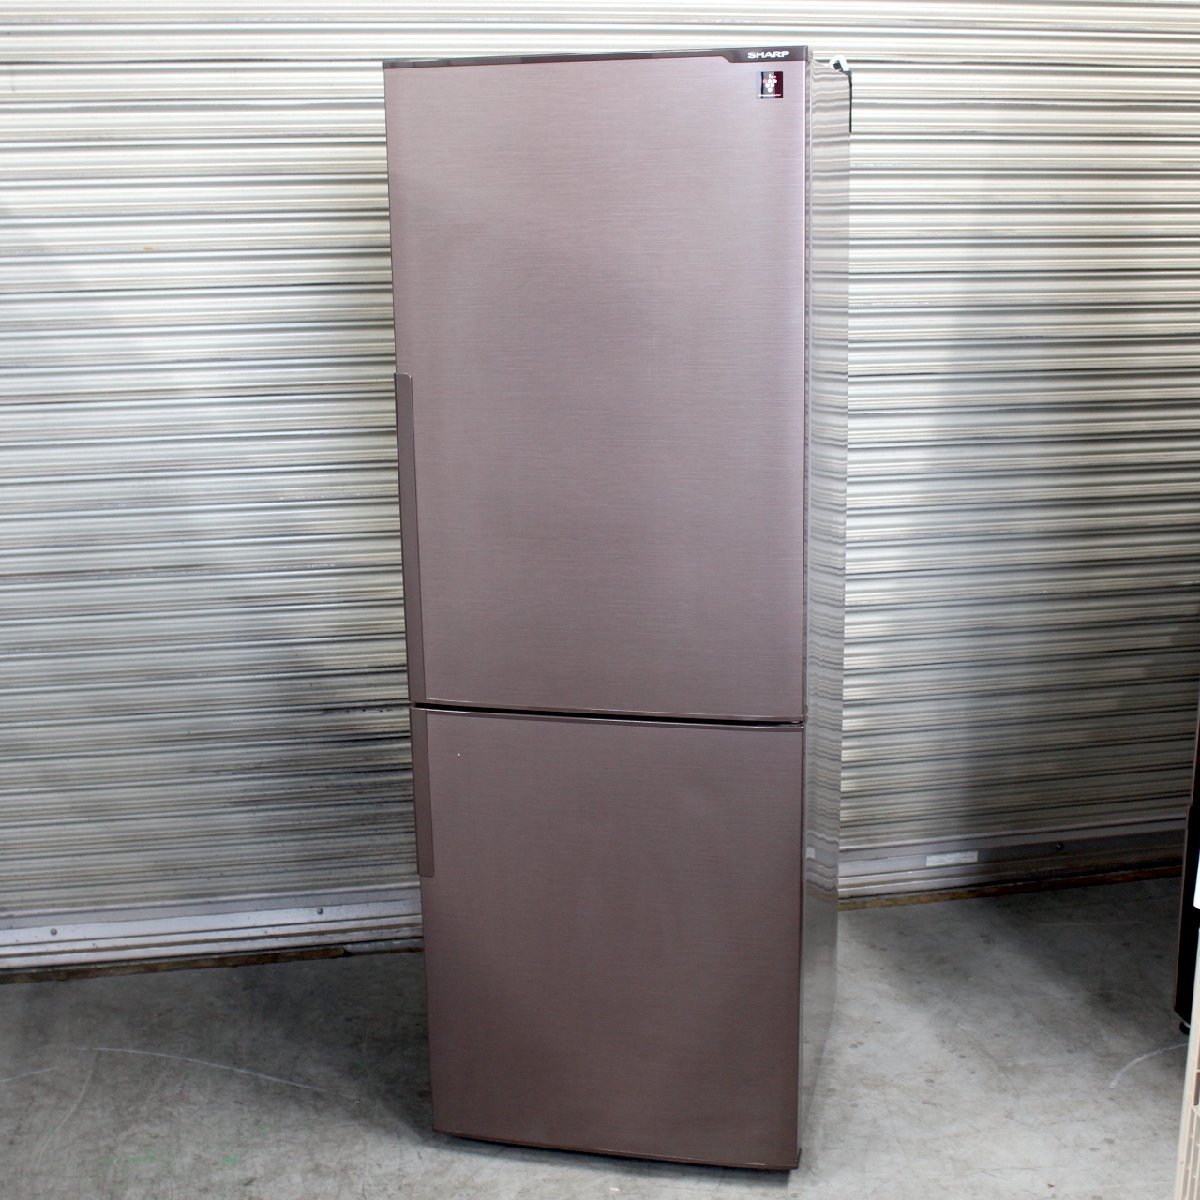 東京都練馬区にて シャープ 冷凍冷蔵庫 SJ-PD27D-T 2018年製 を出張買取させて頂きました。